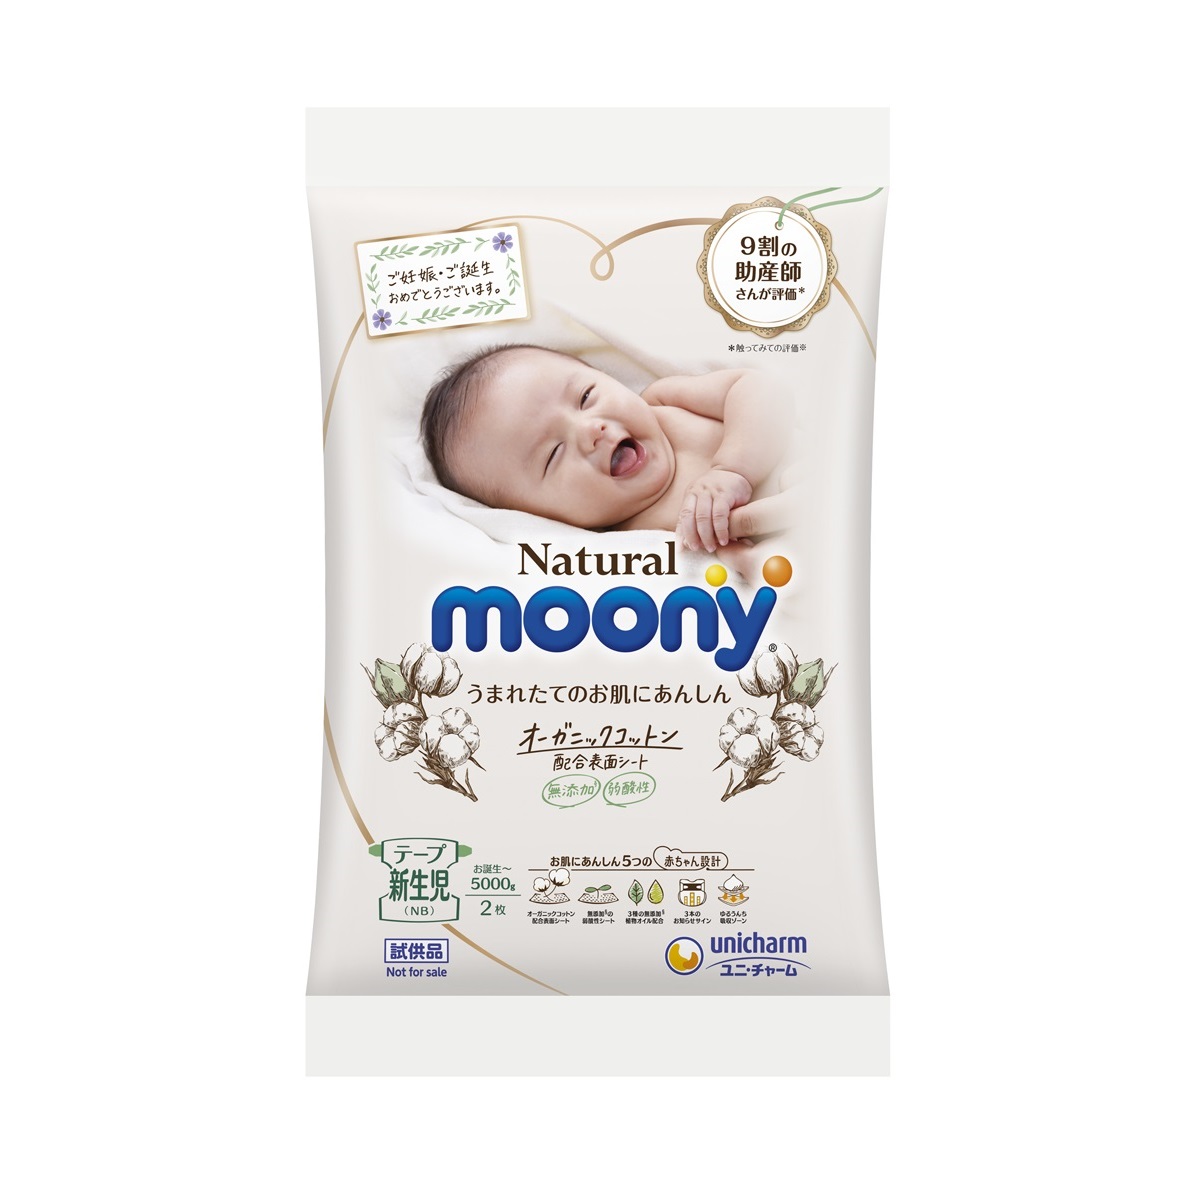 Natural Moony Diaper